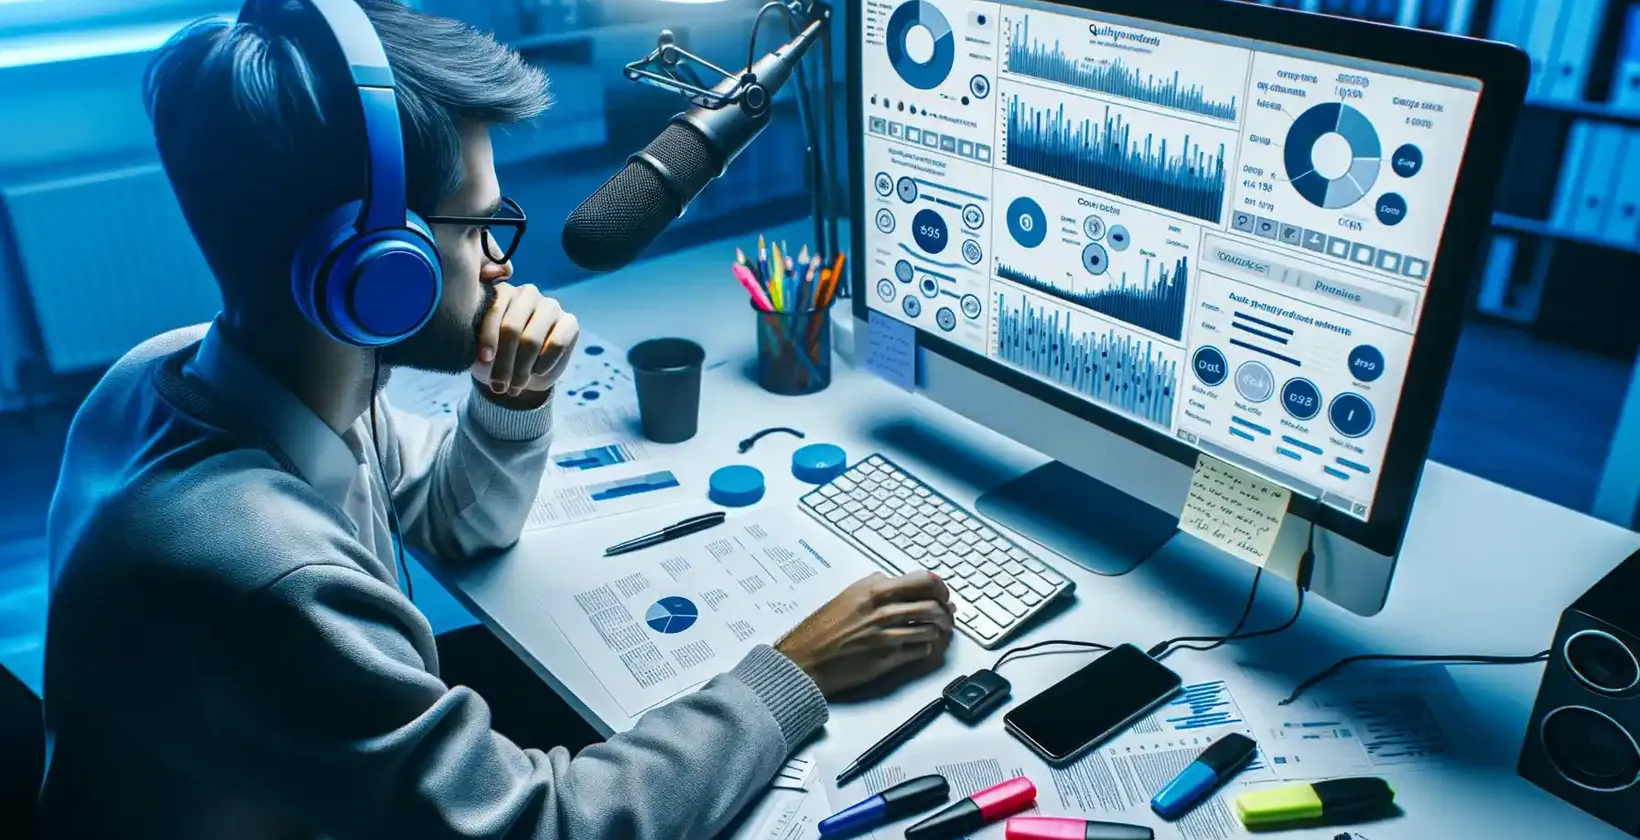 Akademska usluga transkripcije koju prikazuje profesionalac sa slušalicama, mikrofonom i hologramskim interfejsom na laptop računaru